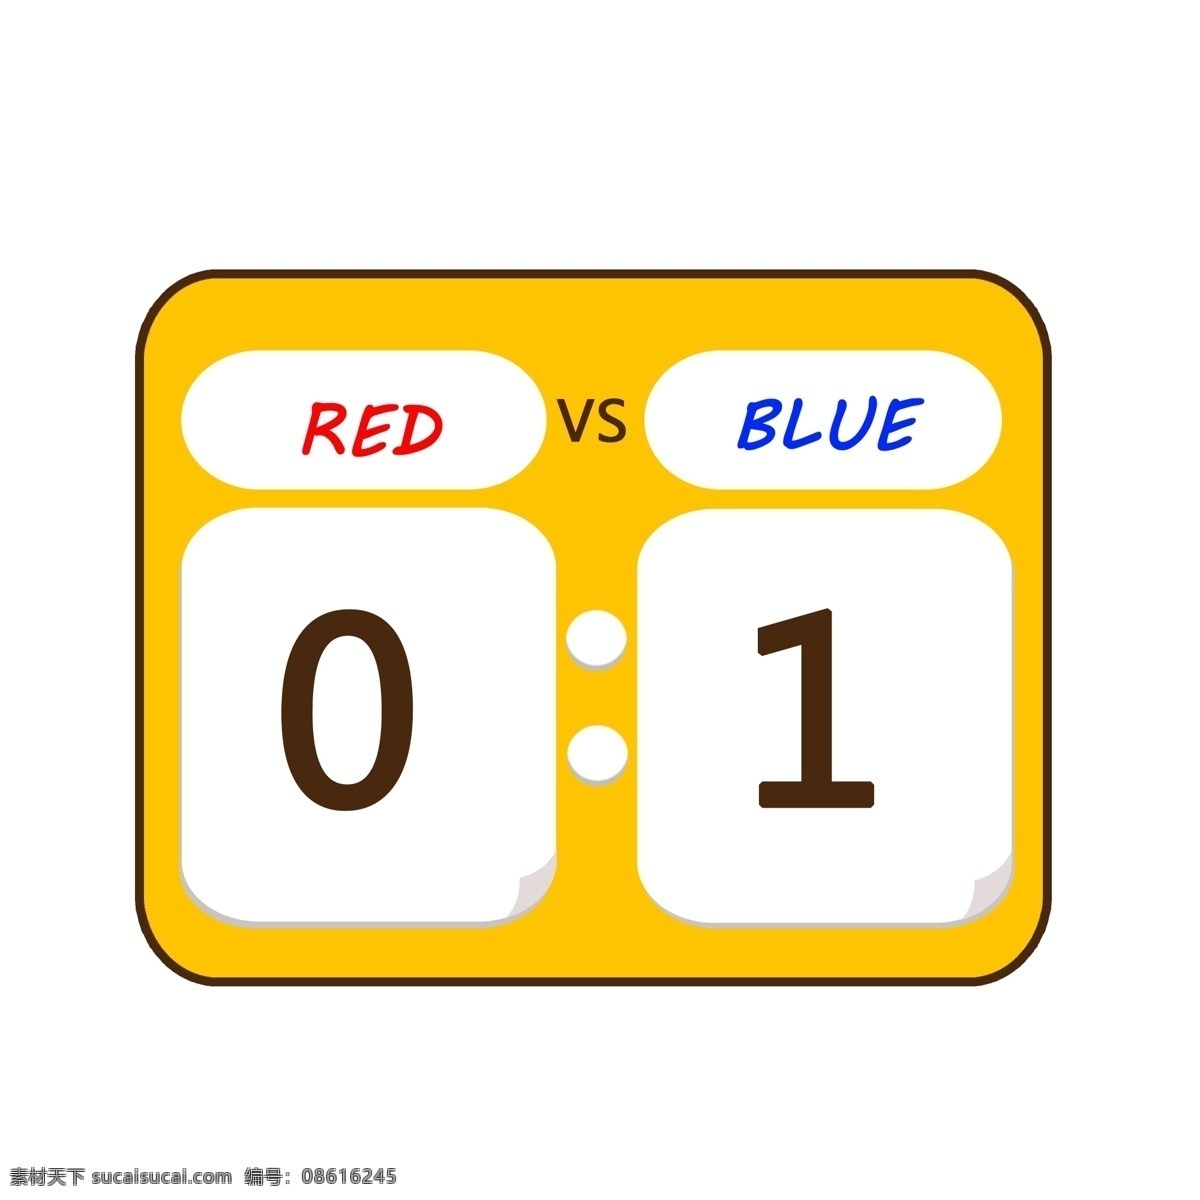 卡通 篮球 日 运动 红蓝 黄色 比分 牌 元素 blue vs 红方 蓝方 比分牌 red 篮球日